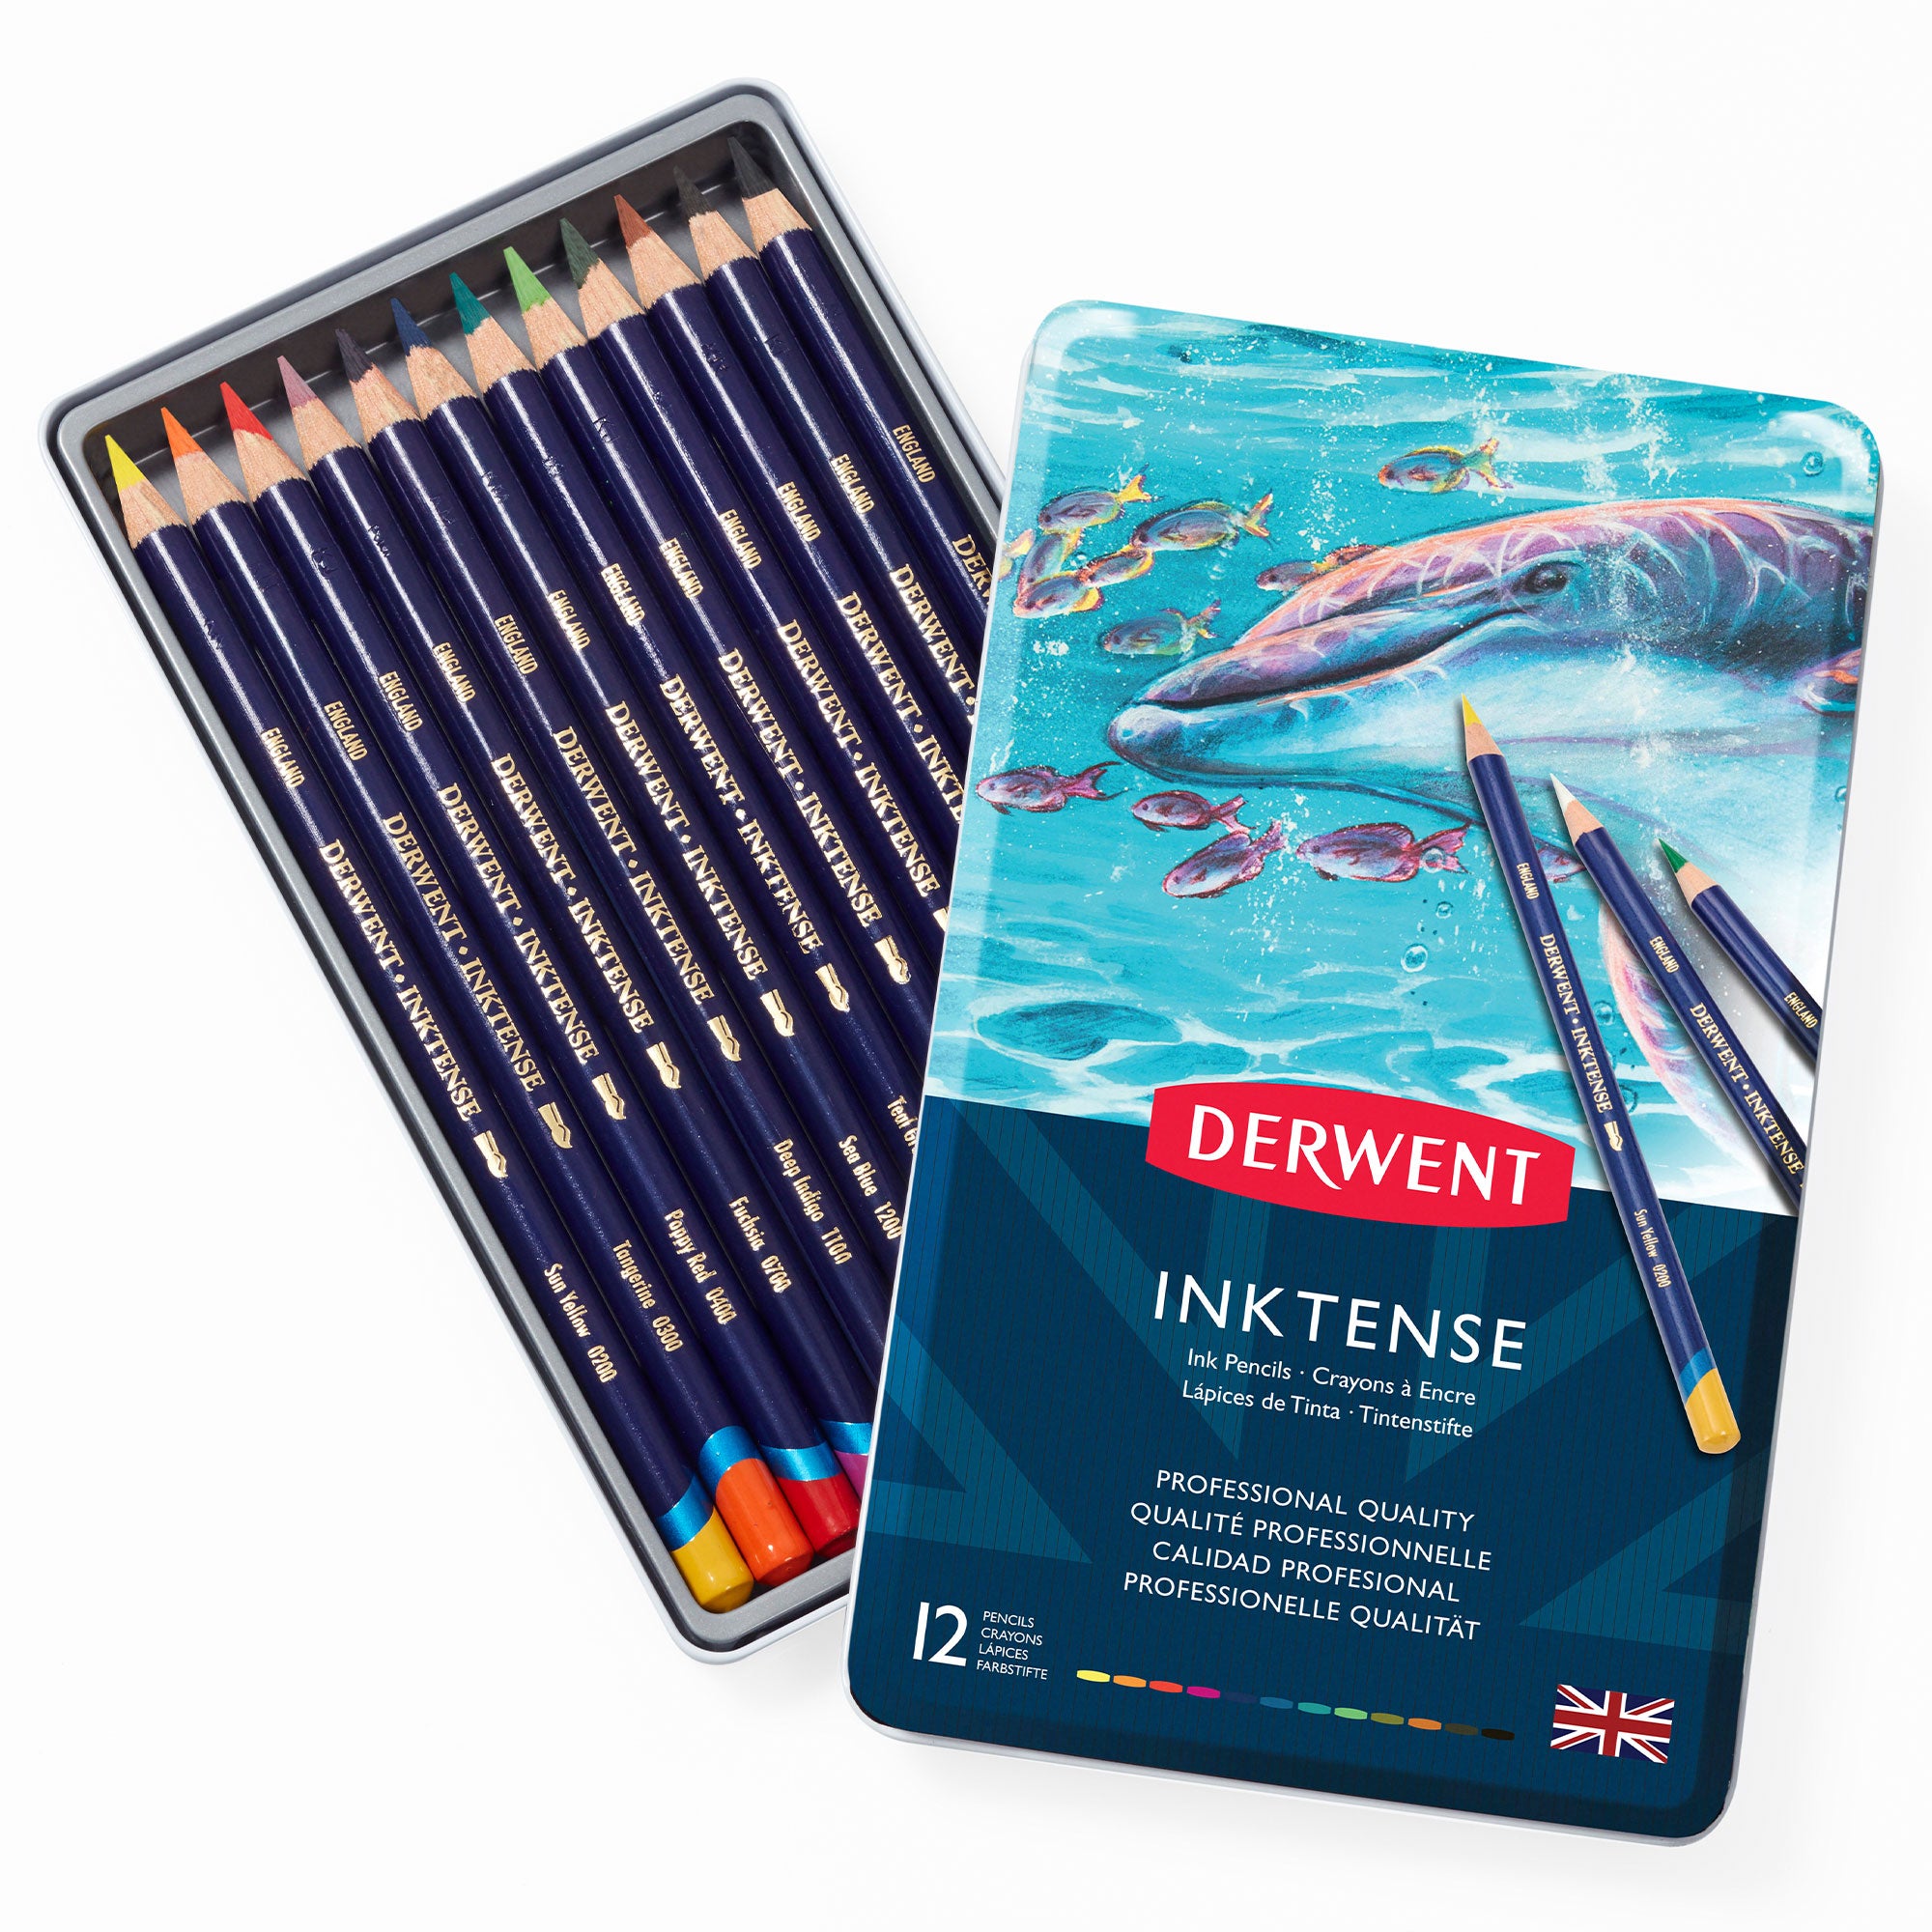 Derwent Inktense Pencils - Set of 12 - Box Open